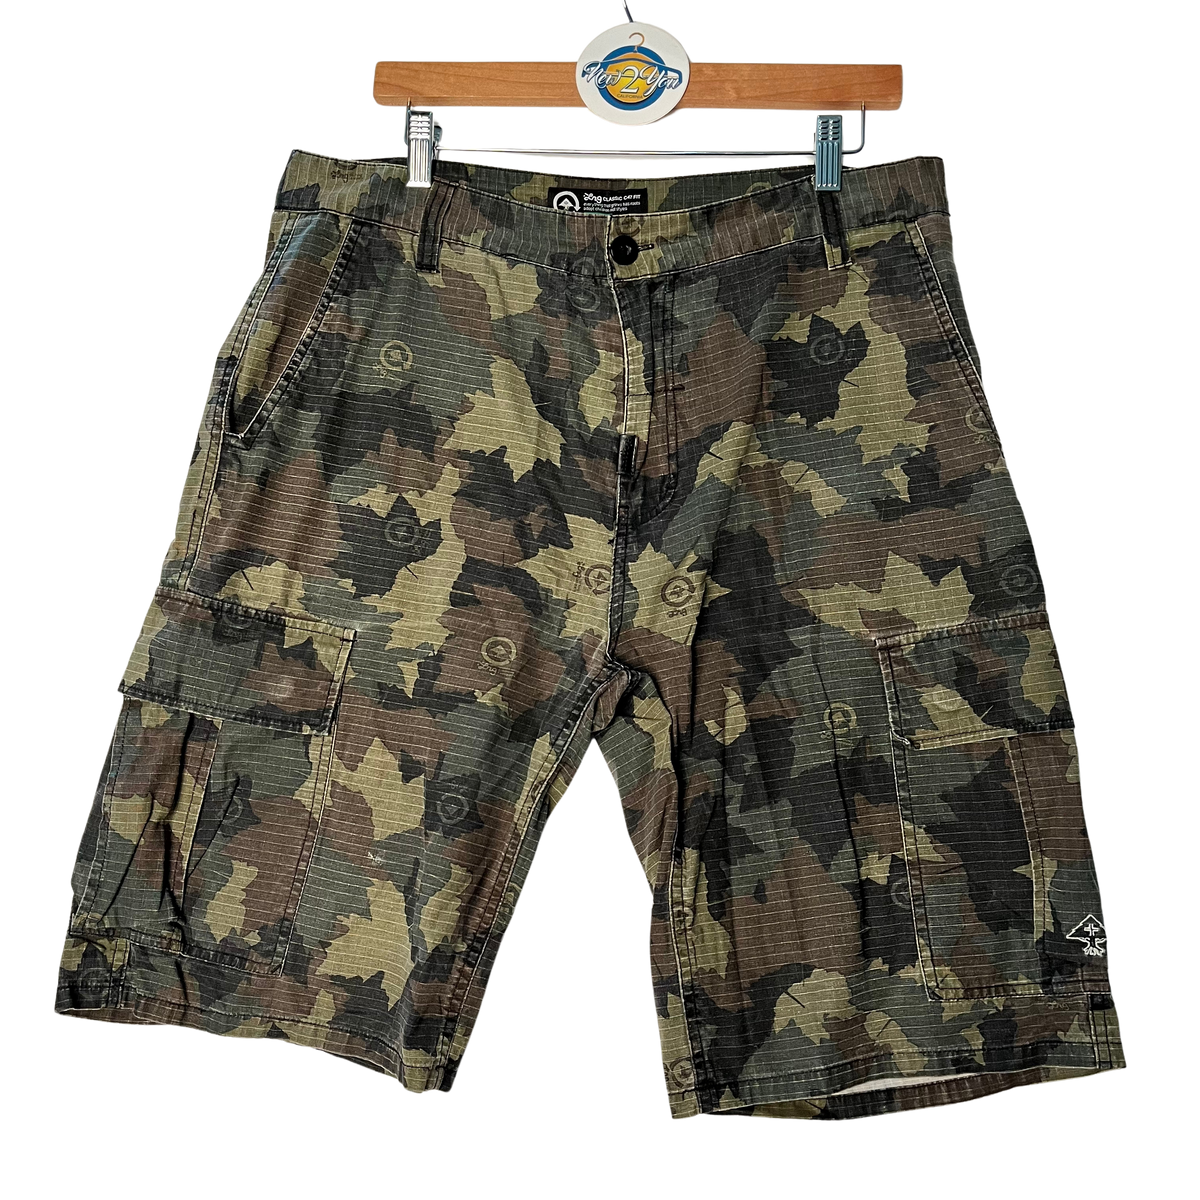 LRG Camouflage Cargo Shorts